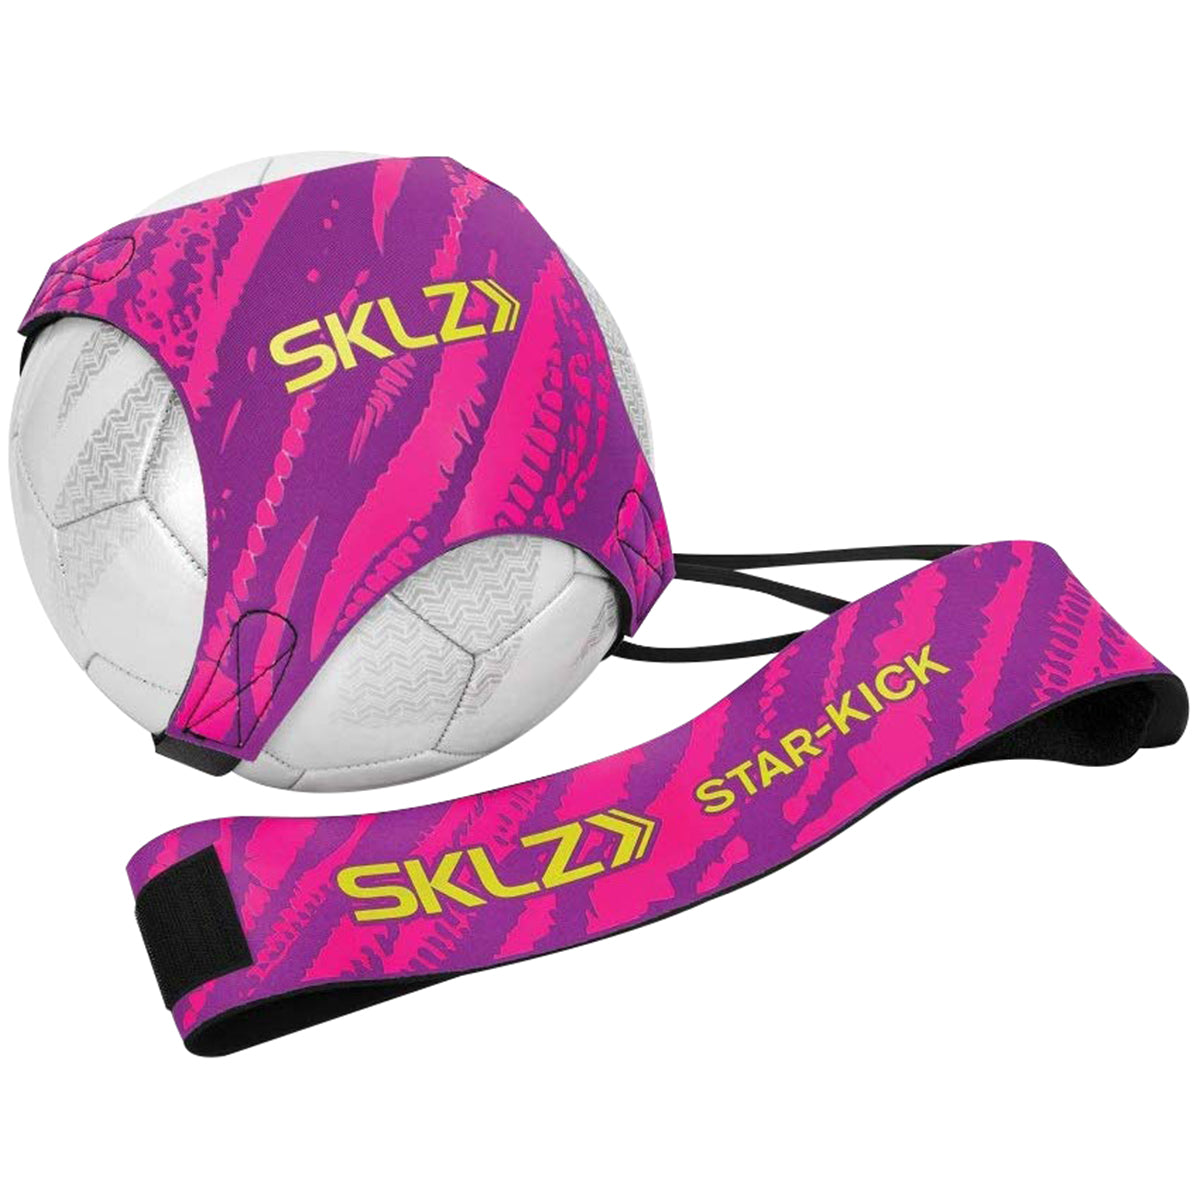 SKLZ Star-Kick Solo Soccer Trainer - Pink SKLZ